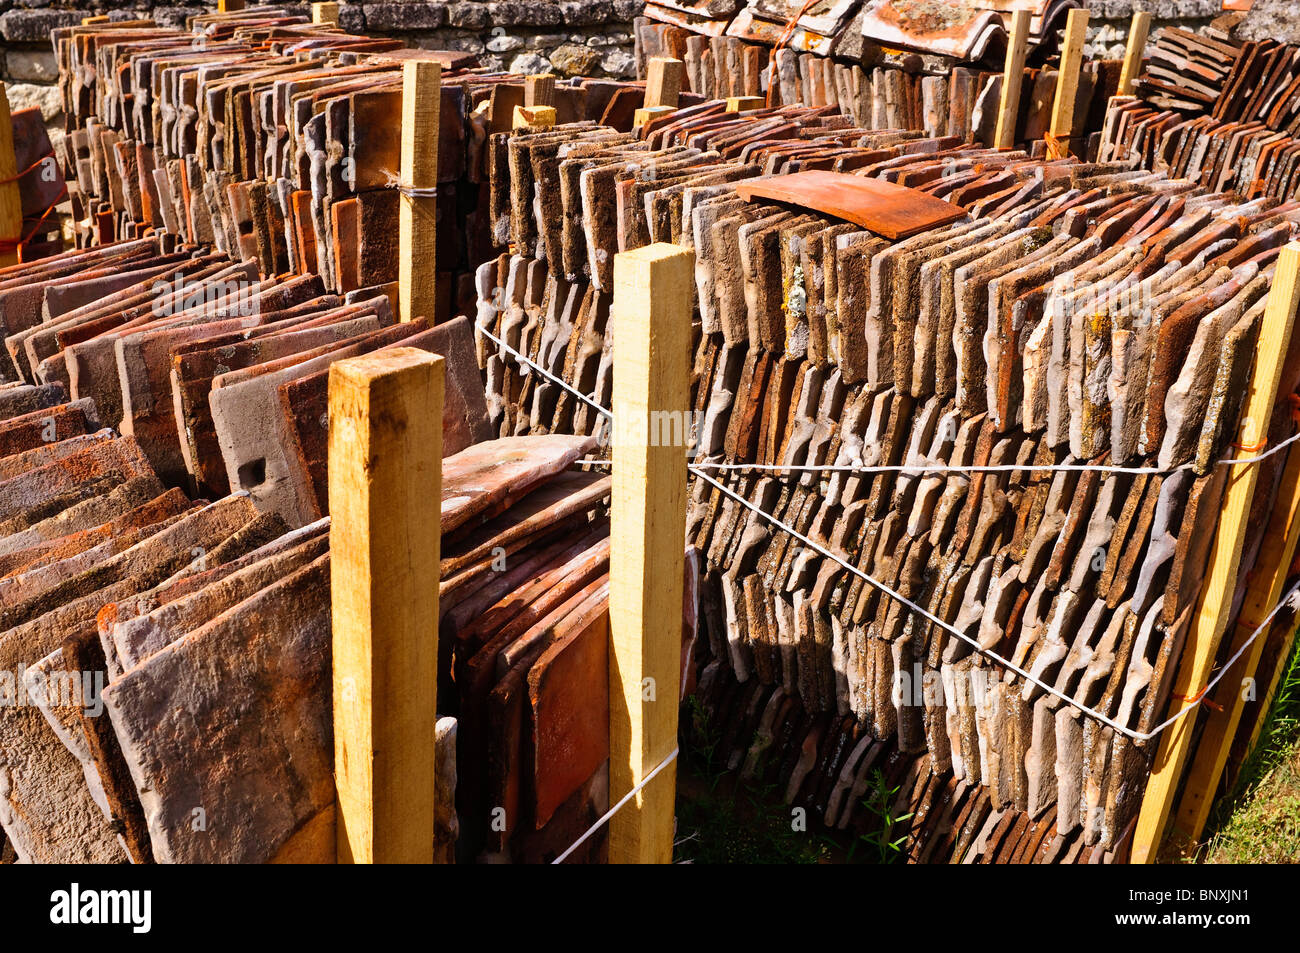 Recyclage de piles de vieux toits, argile rouge - France. Banque D'Images